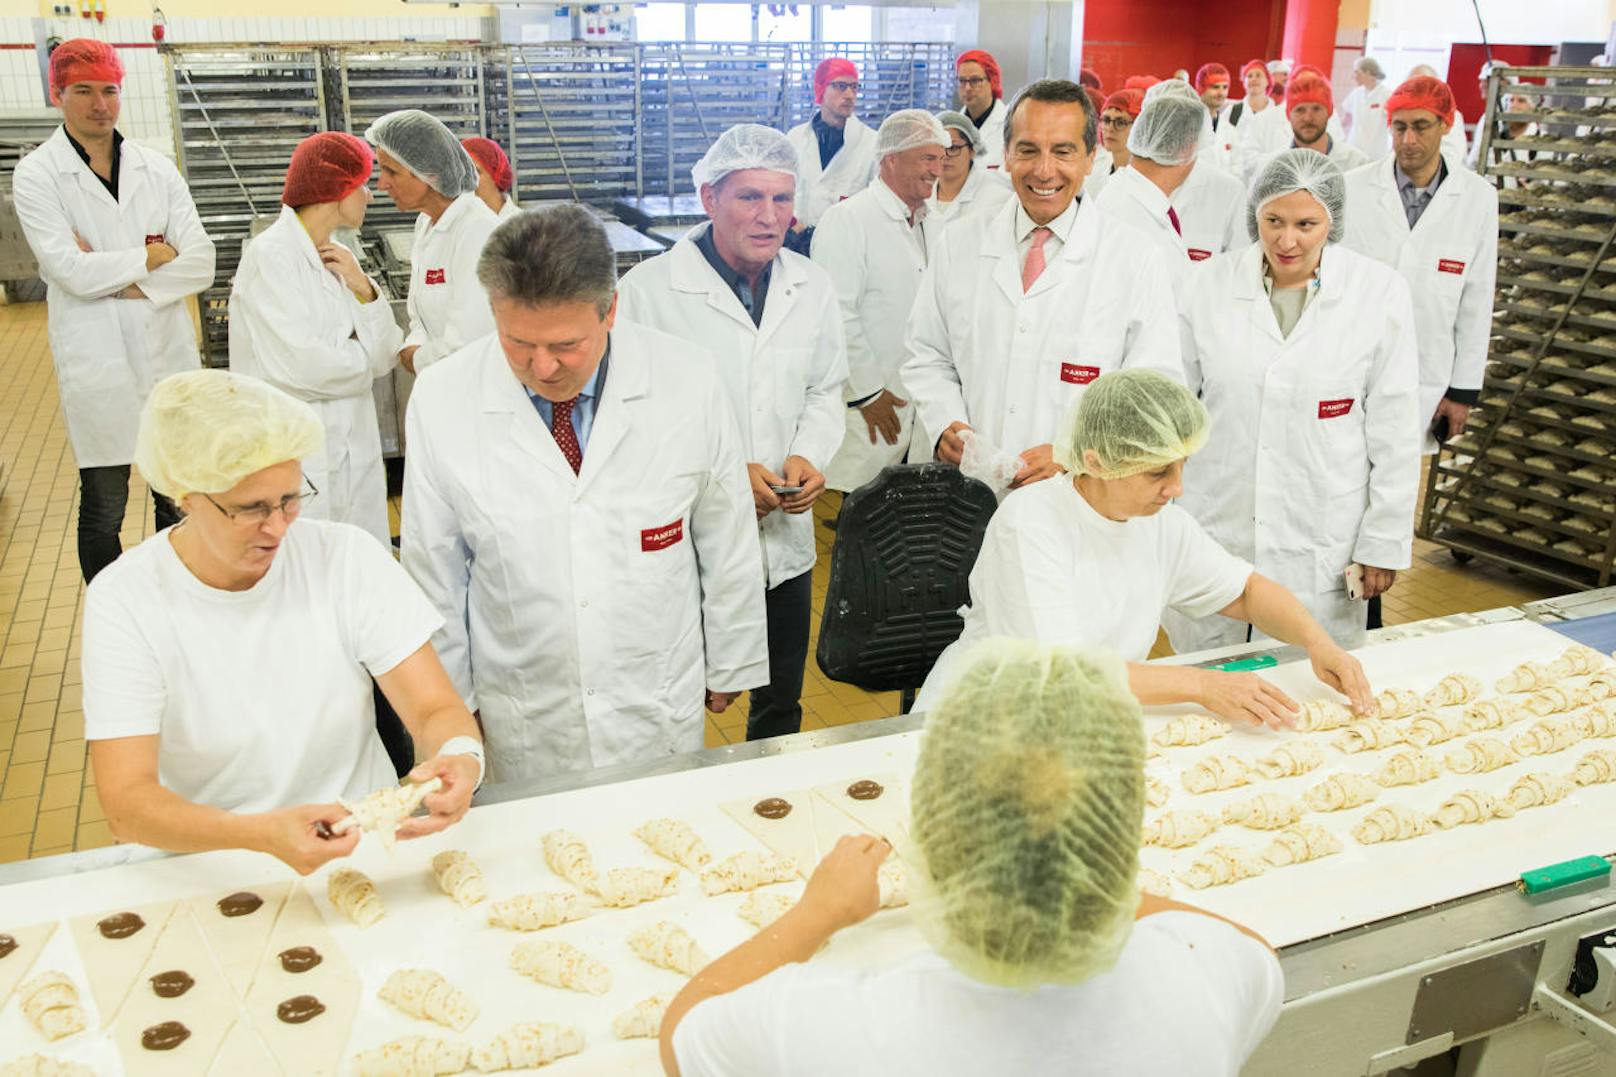 Die Bäckerinnen in der Ankerbrot-Fabrik backen bis zu 1.000 Kipferl pro Tag.